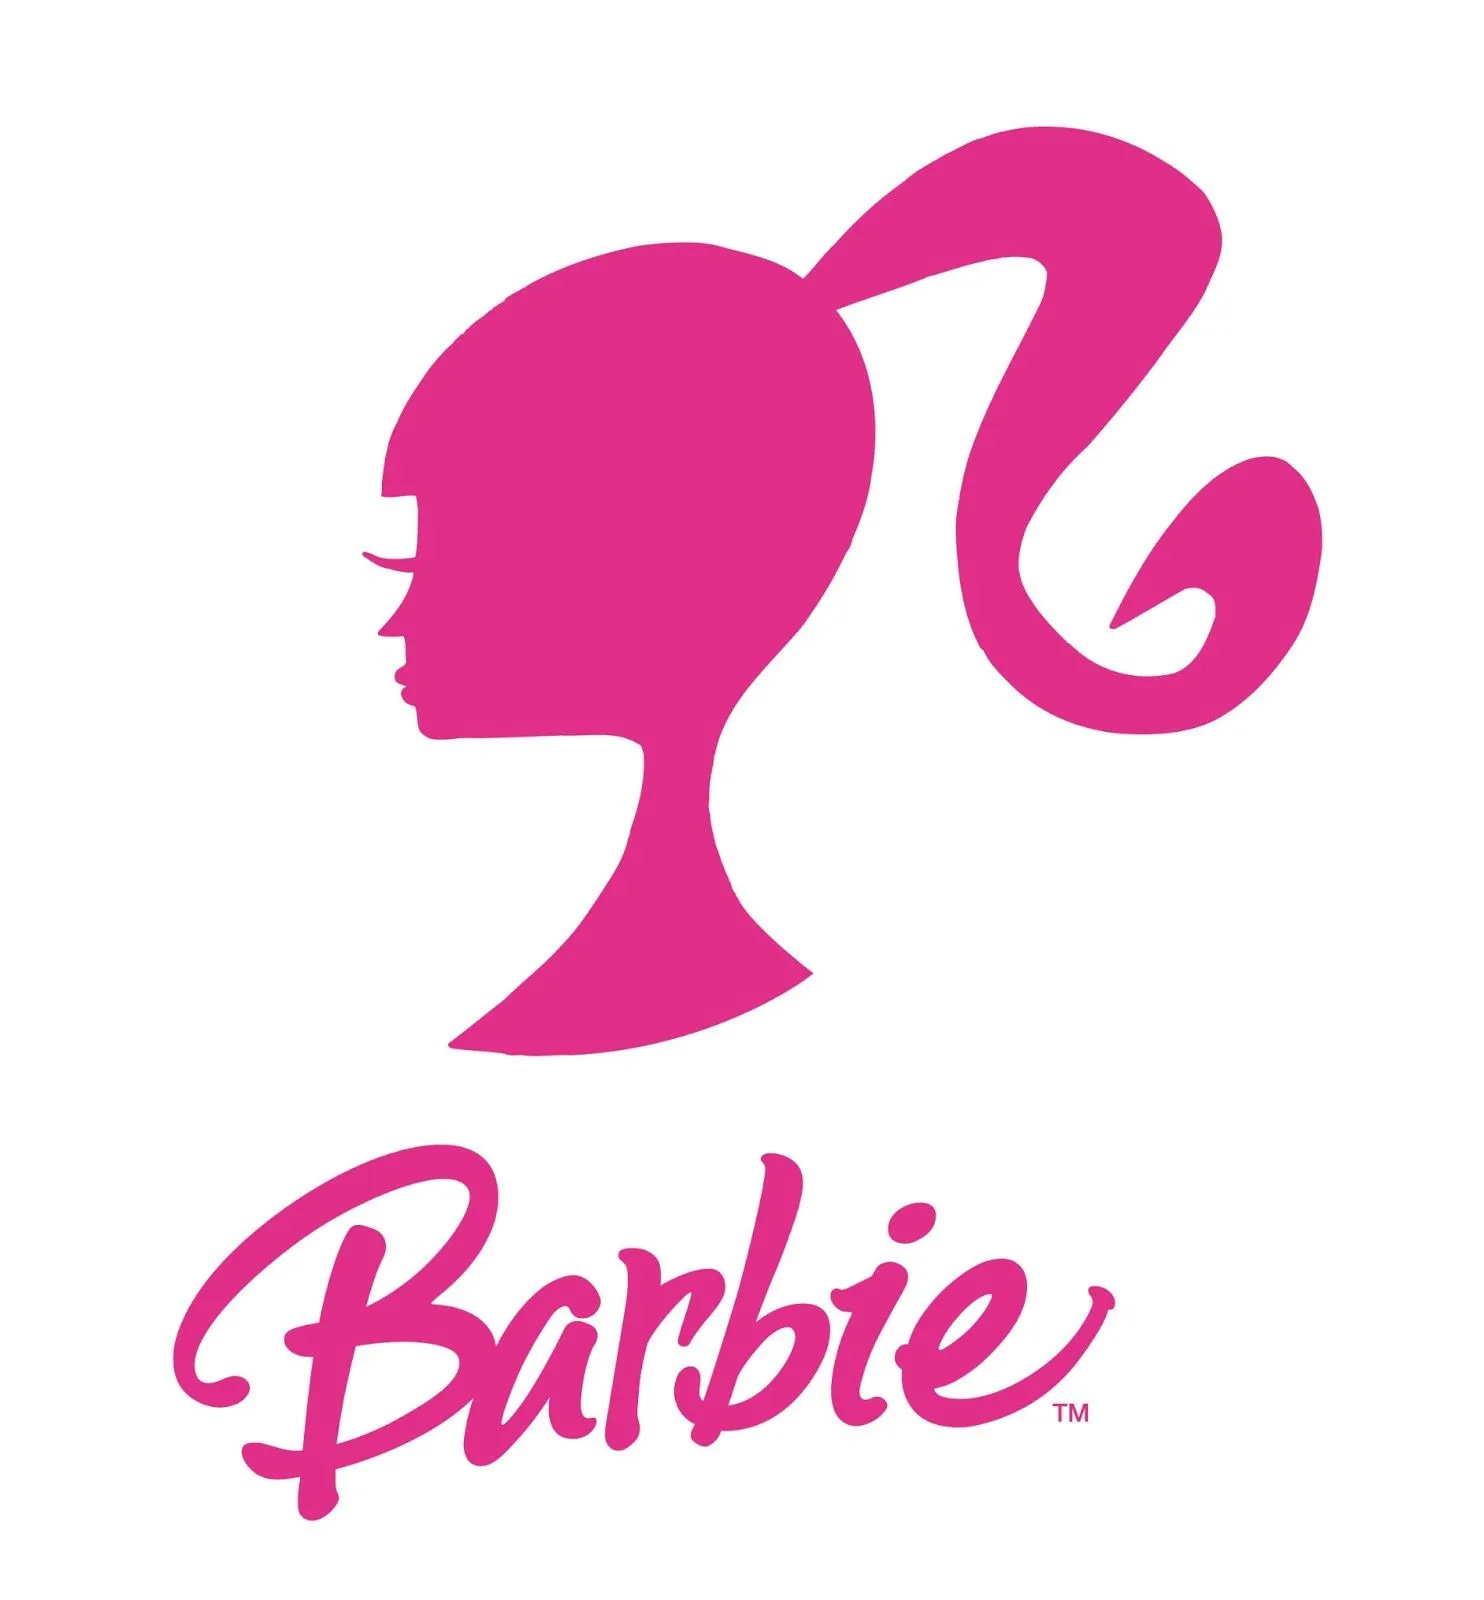 Logotípos de Barbie - Imagui